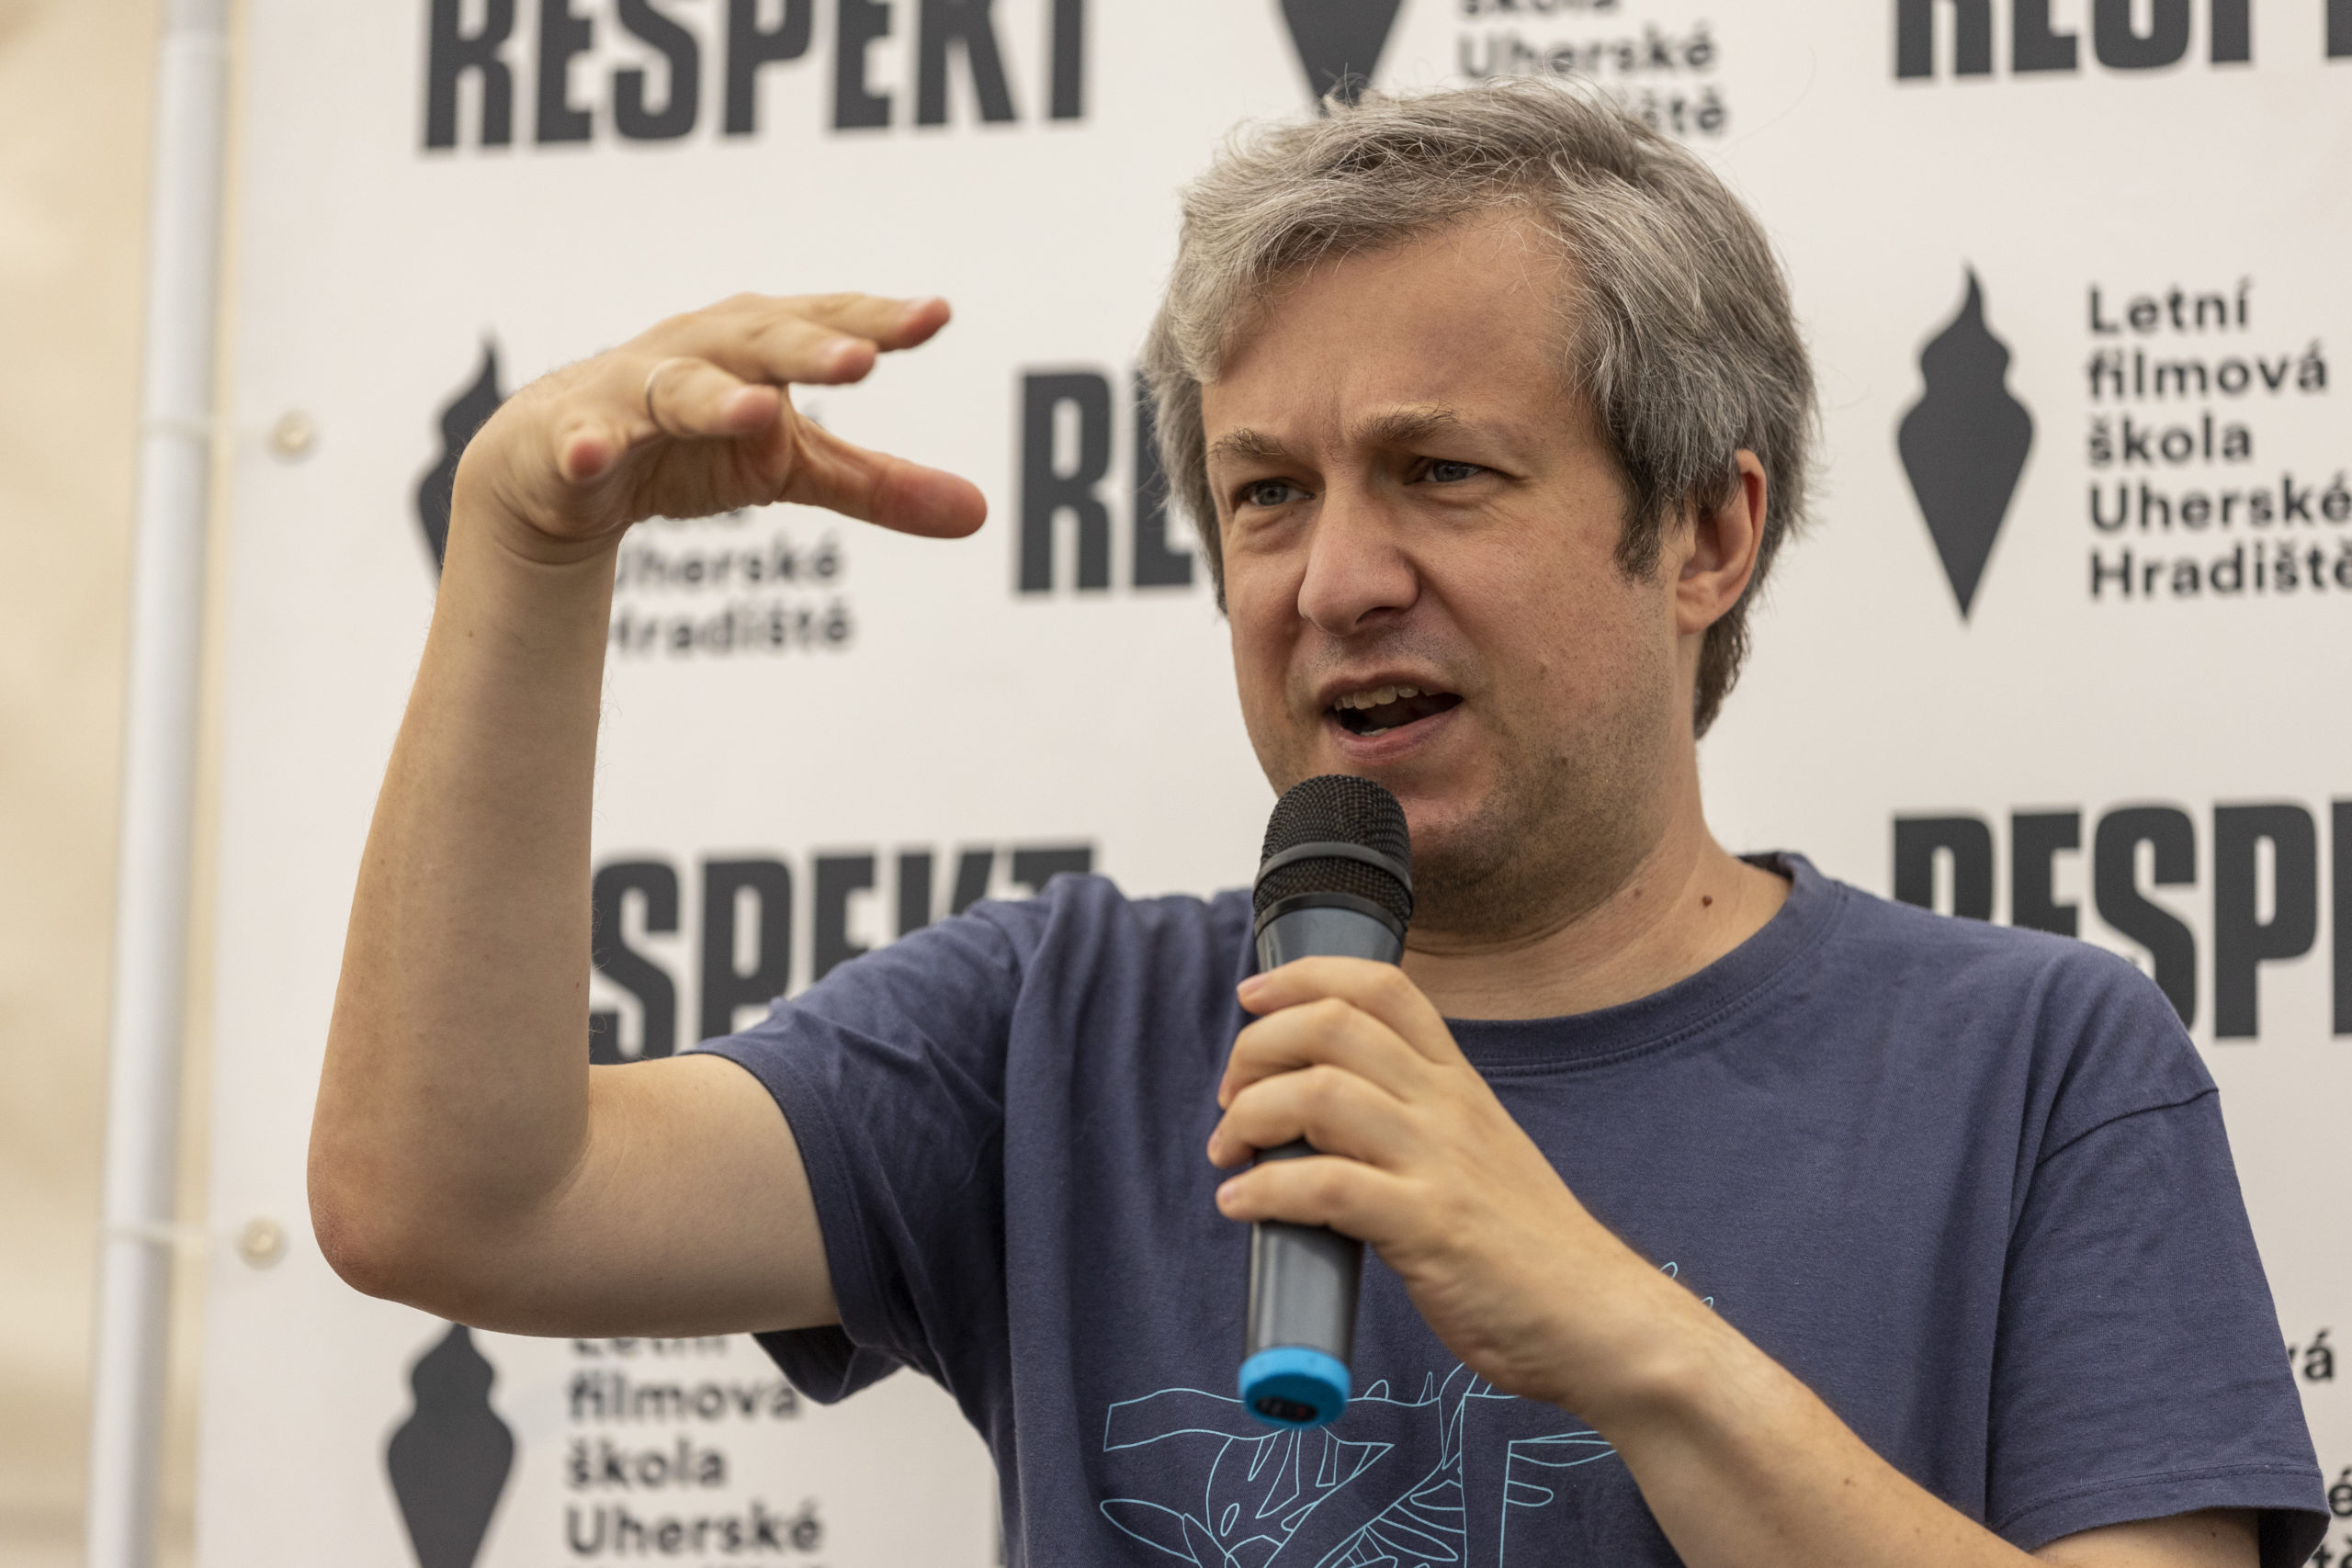 Ukrajinci mají na bojkot ruských filmů právo, říká ruský filmový kritik